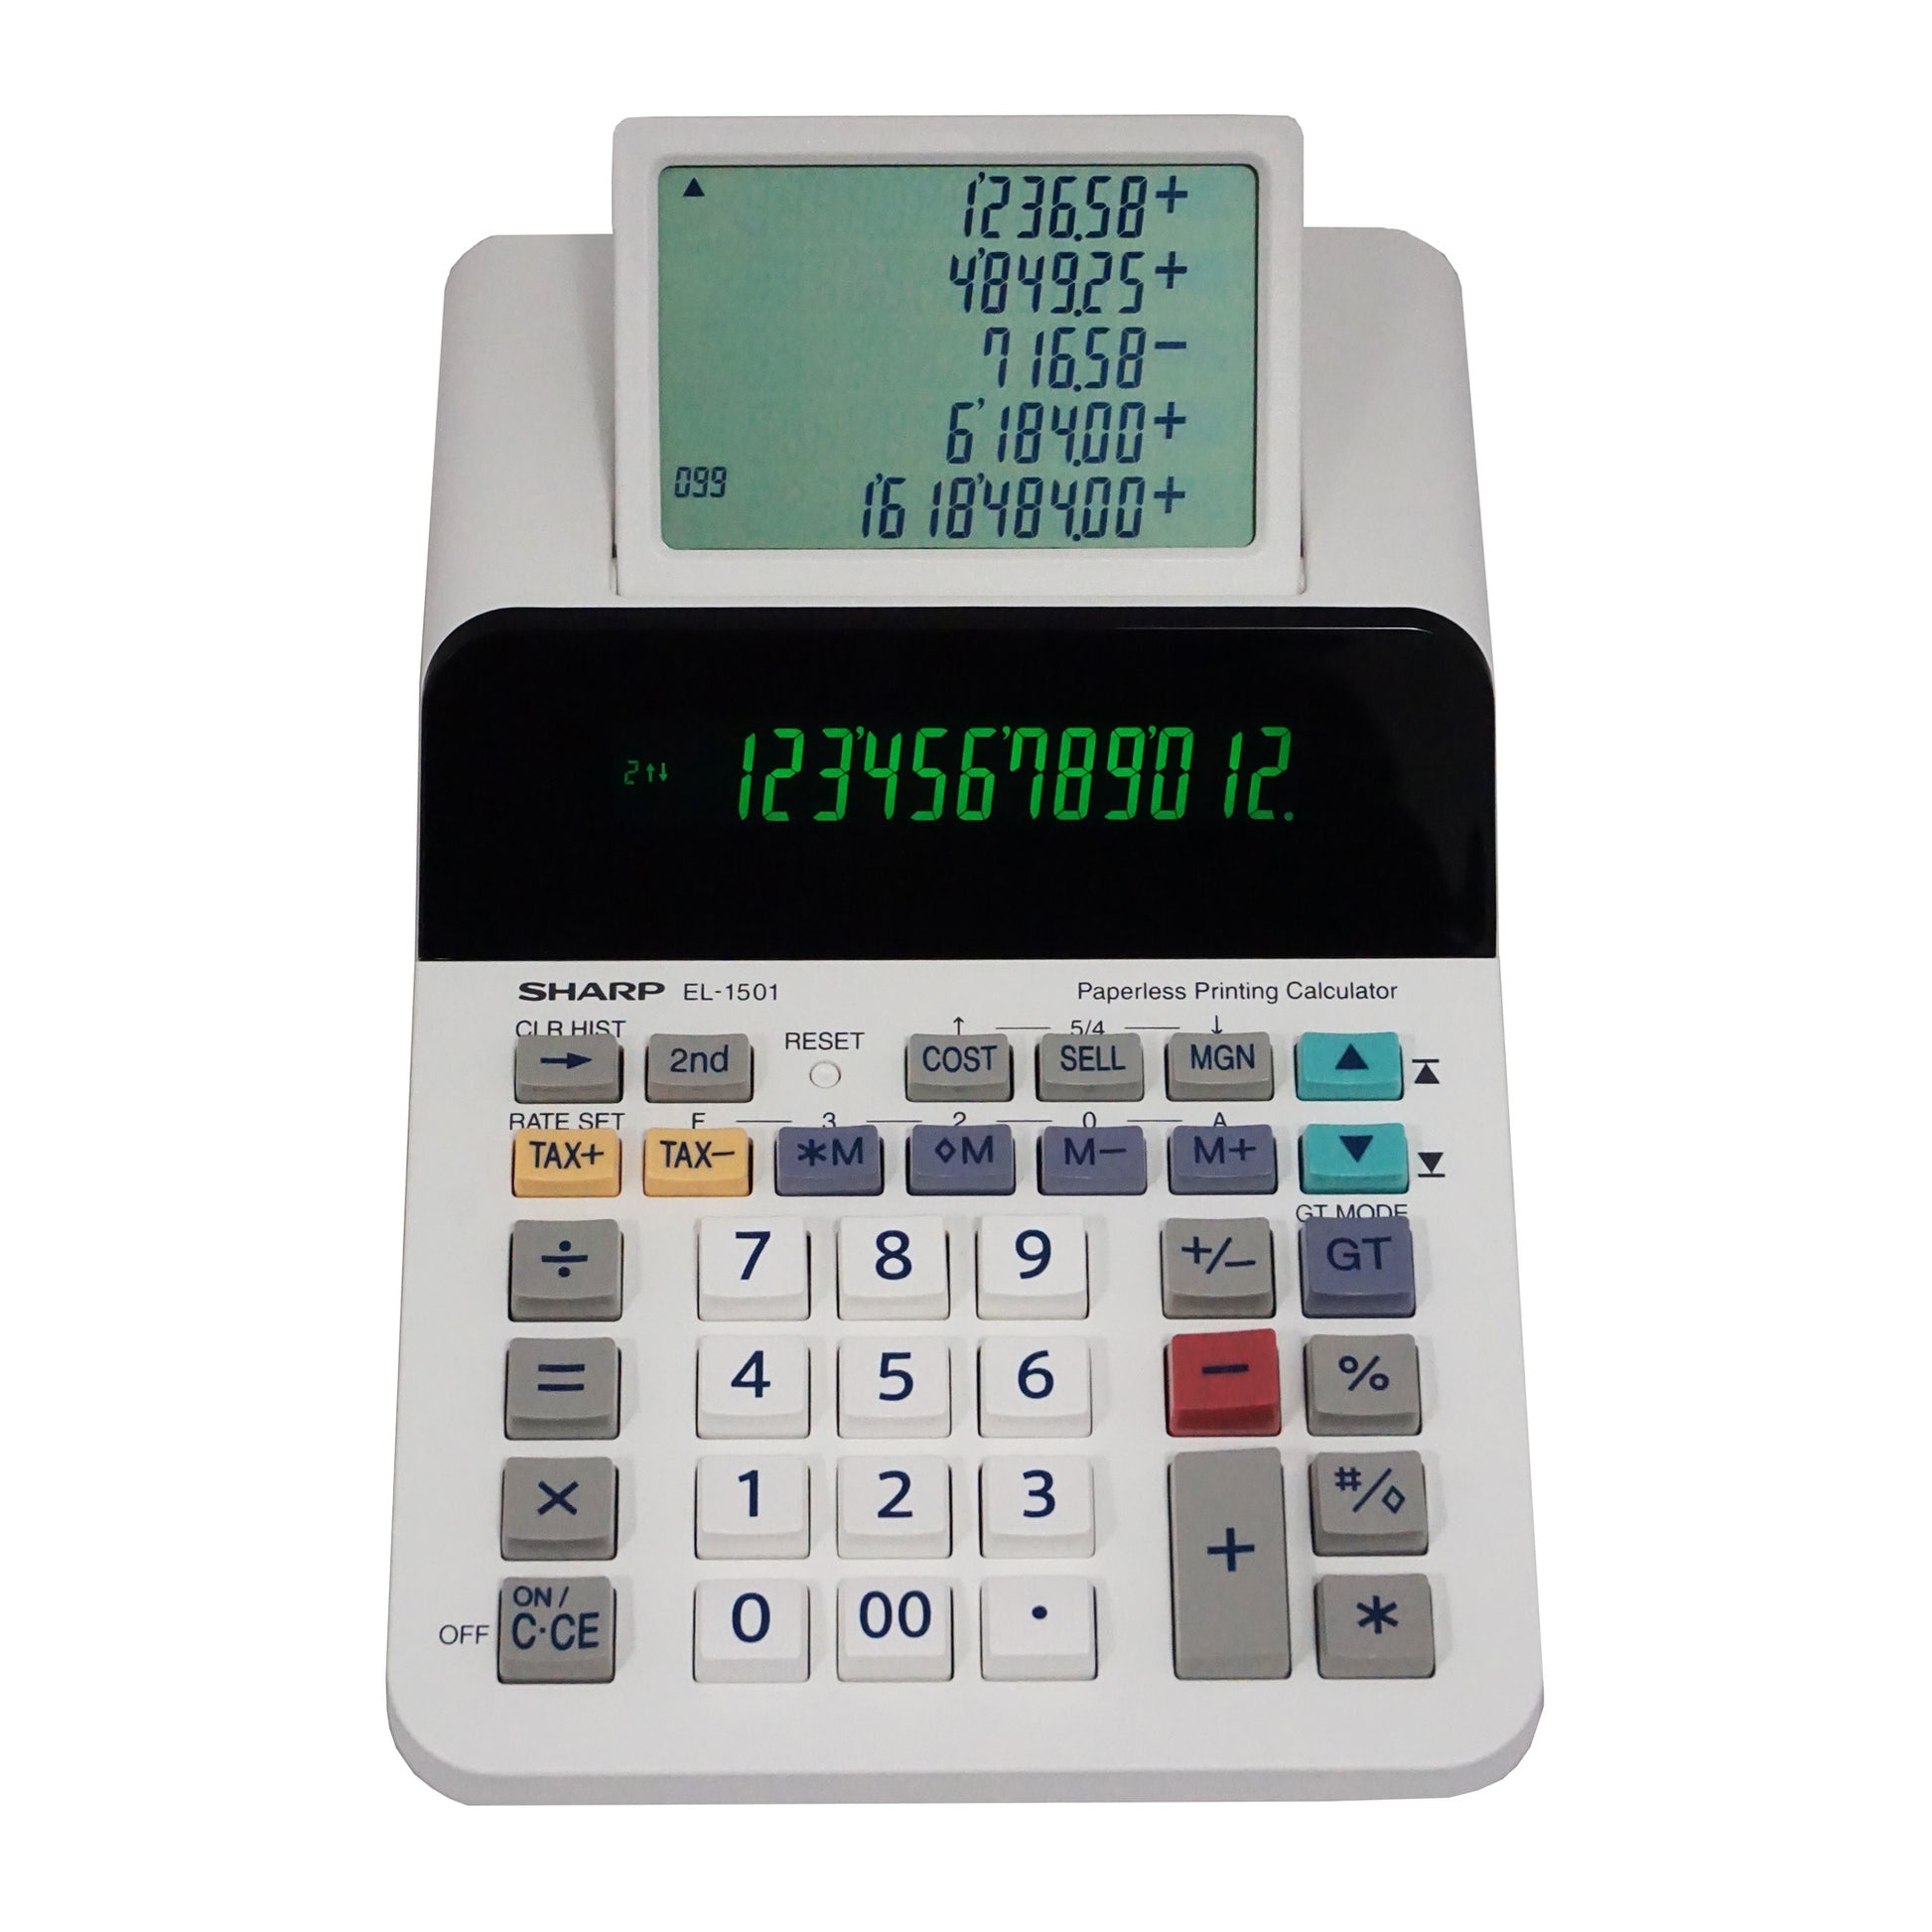 EL-1611V - Sharp calculators